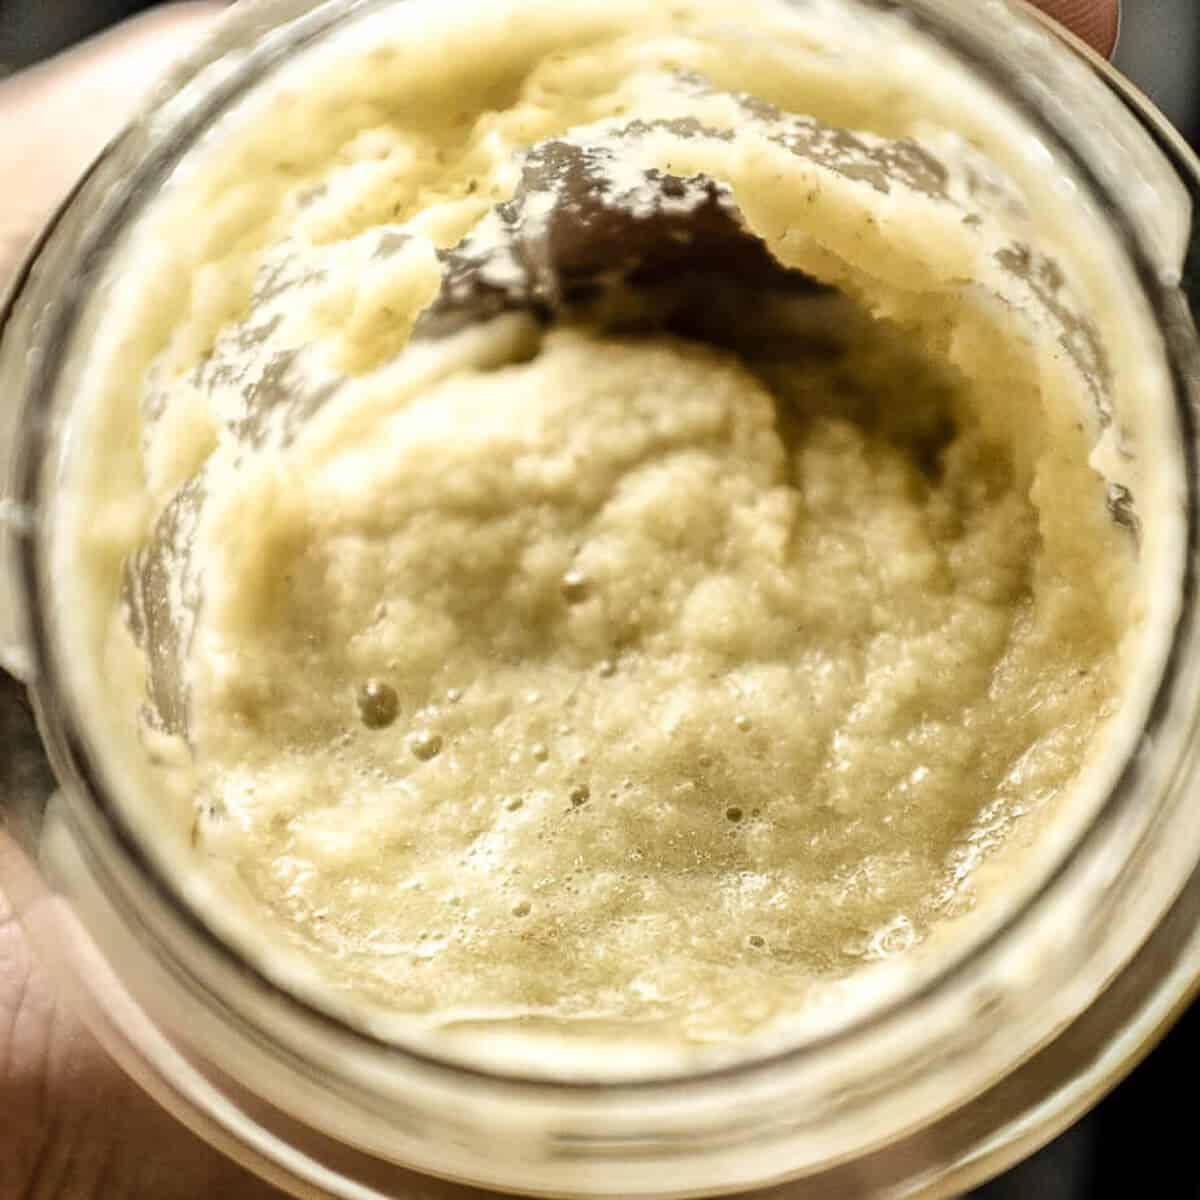 Garlic and ginger paste in a blender jug.